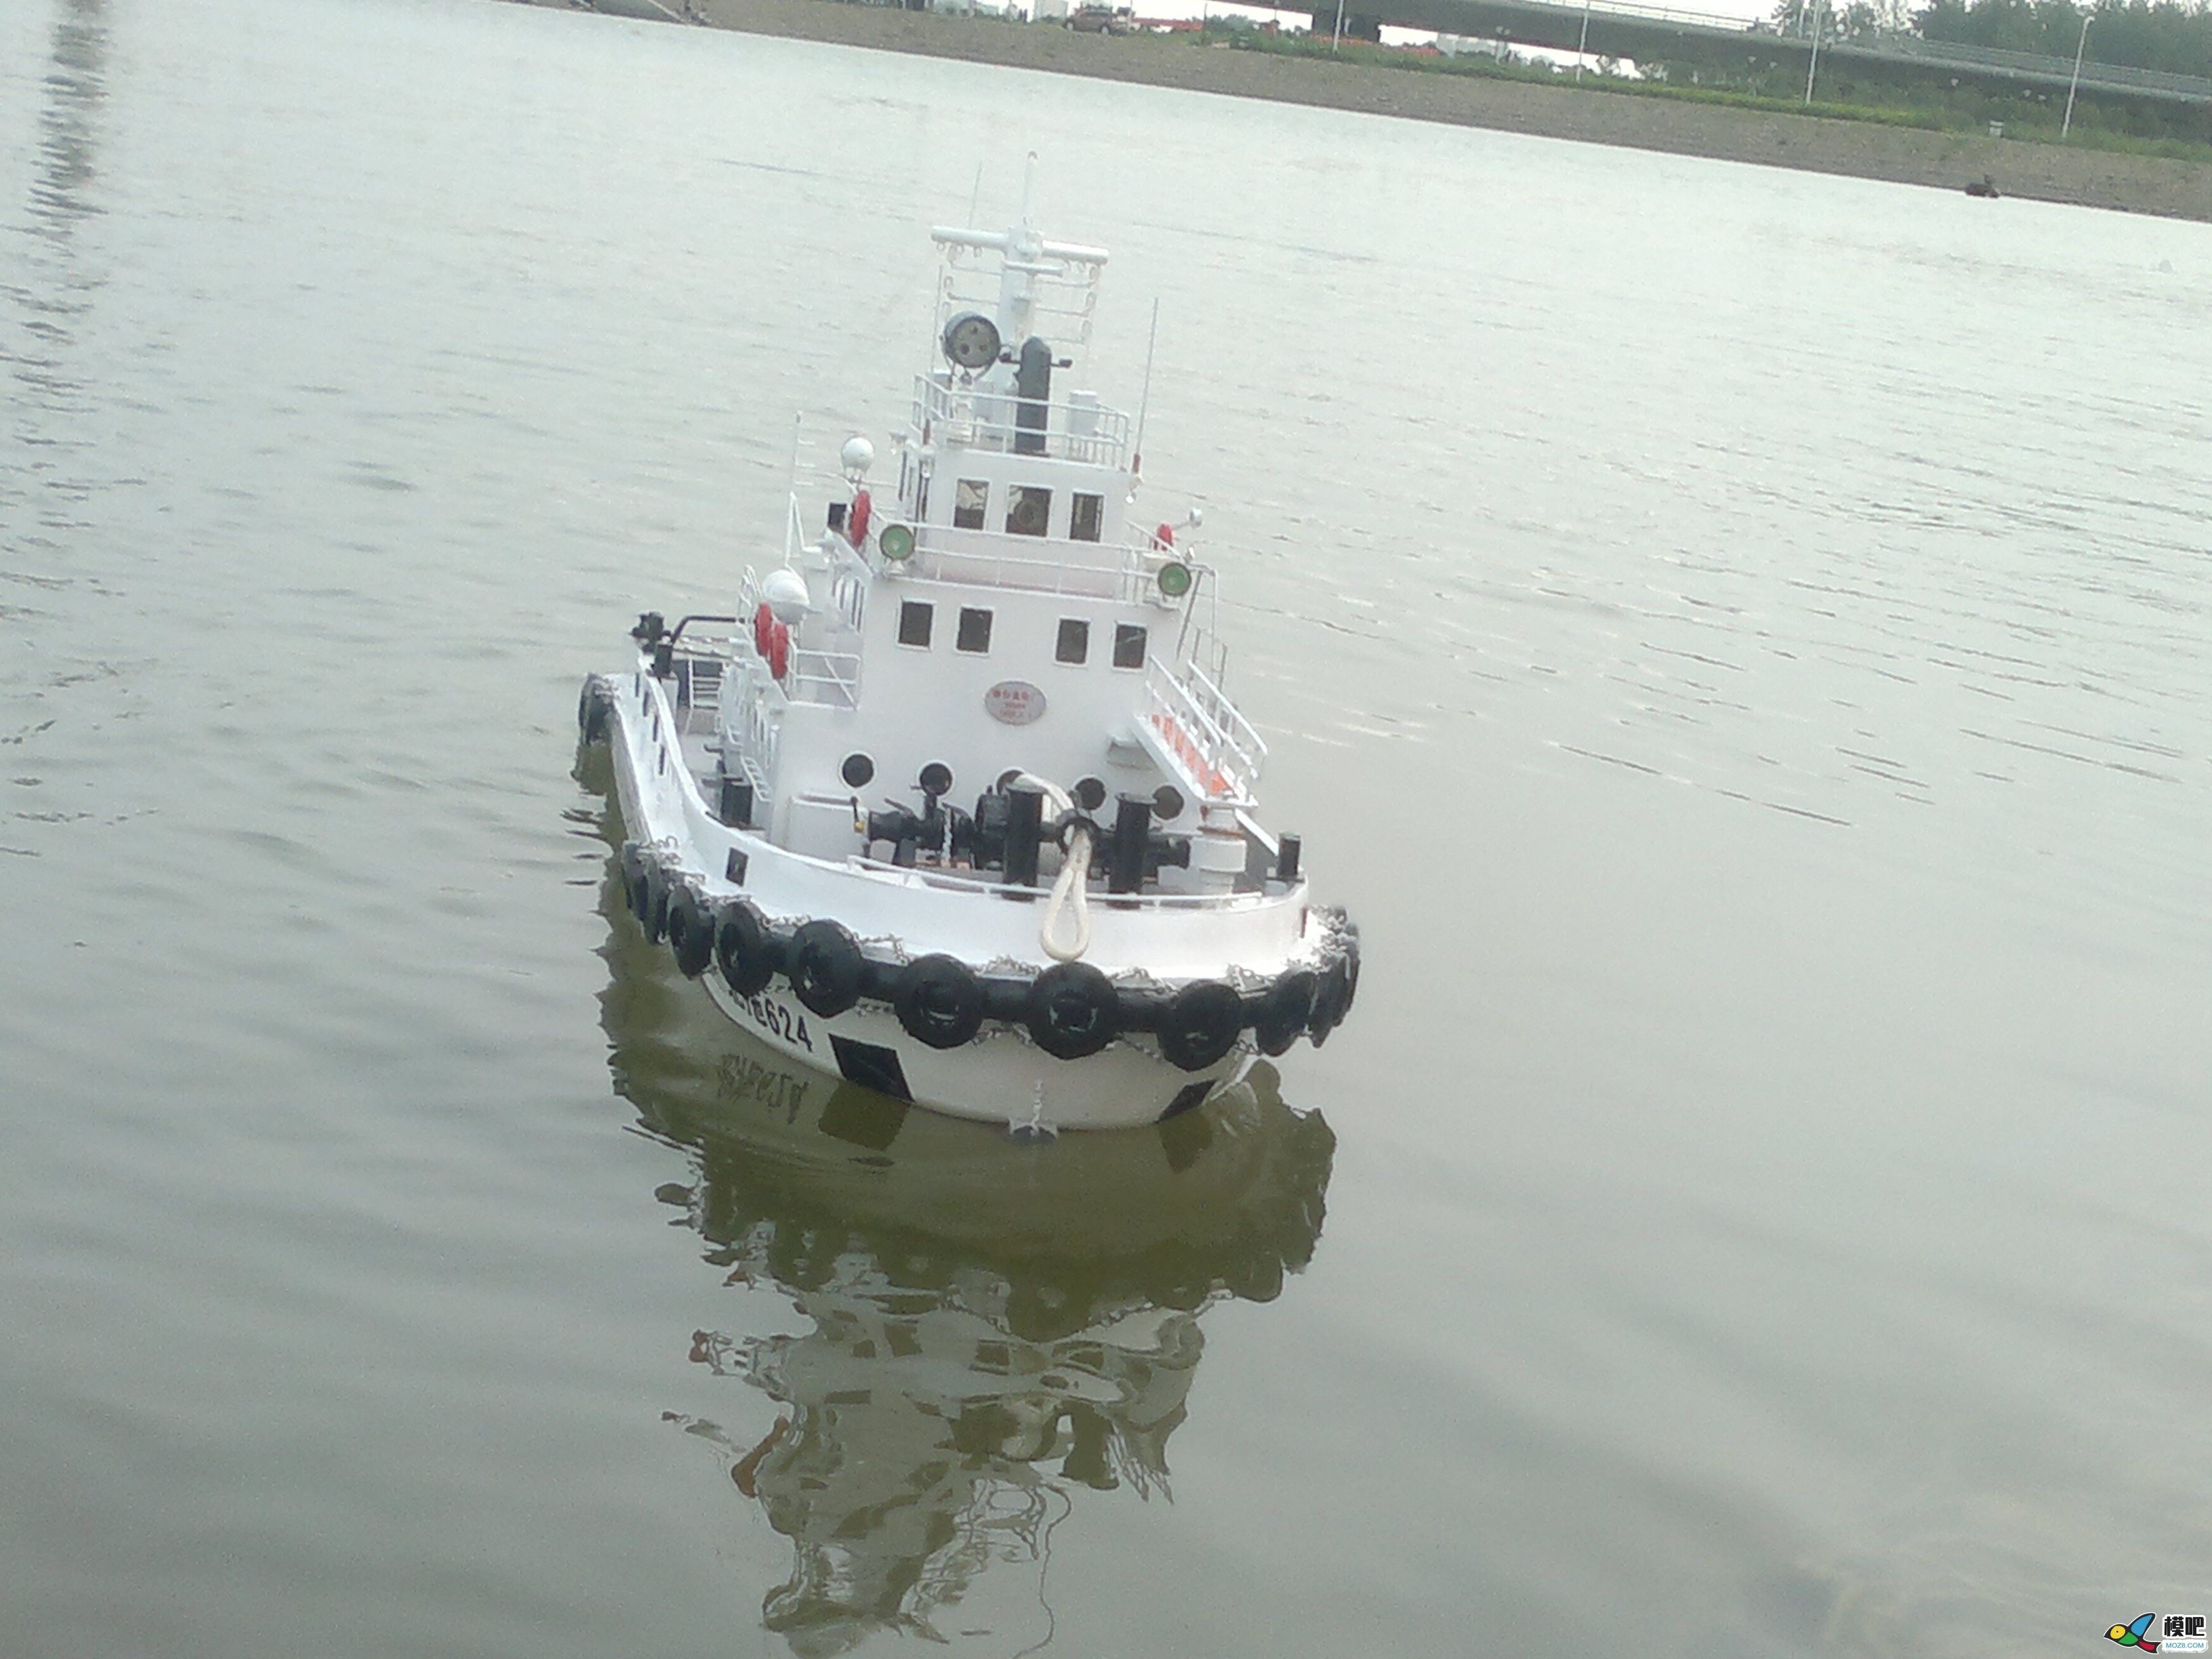 因为怀念所以制作，海军拖船制作小记 海军小型拖船,中国海军拖船,海军布缆船 作者:艇长 2568 